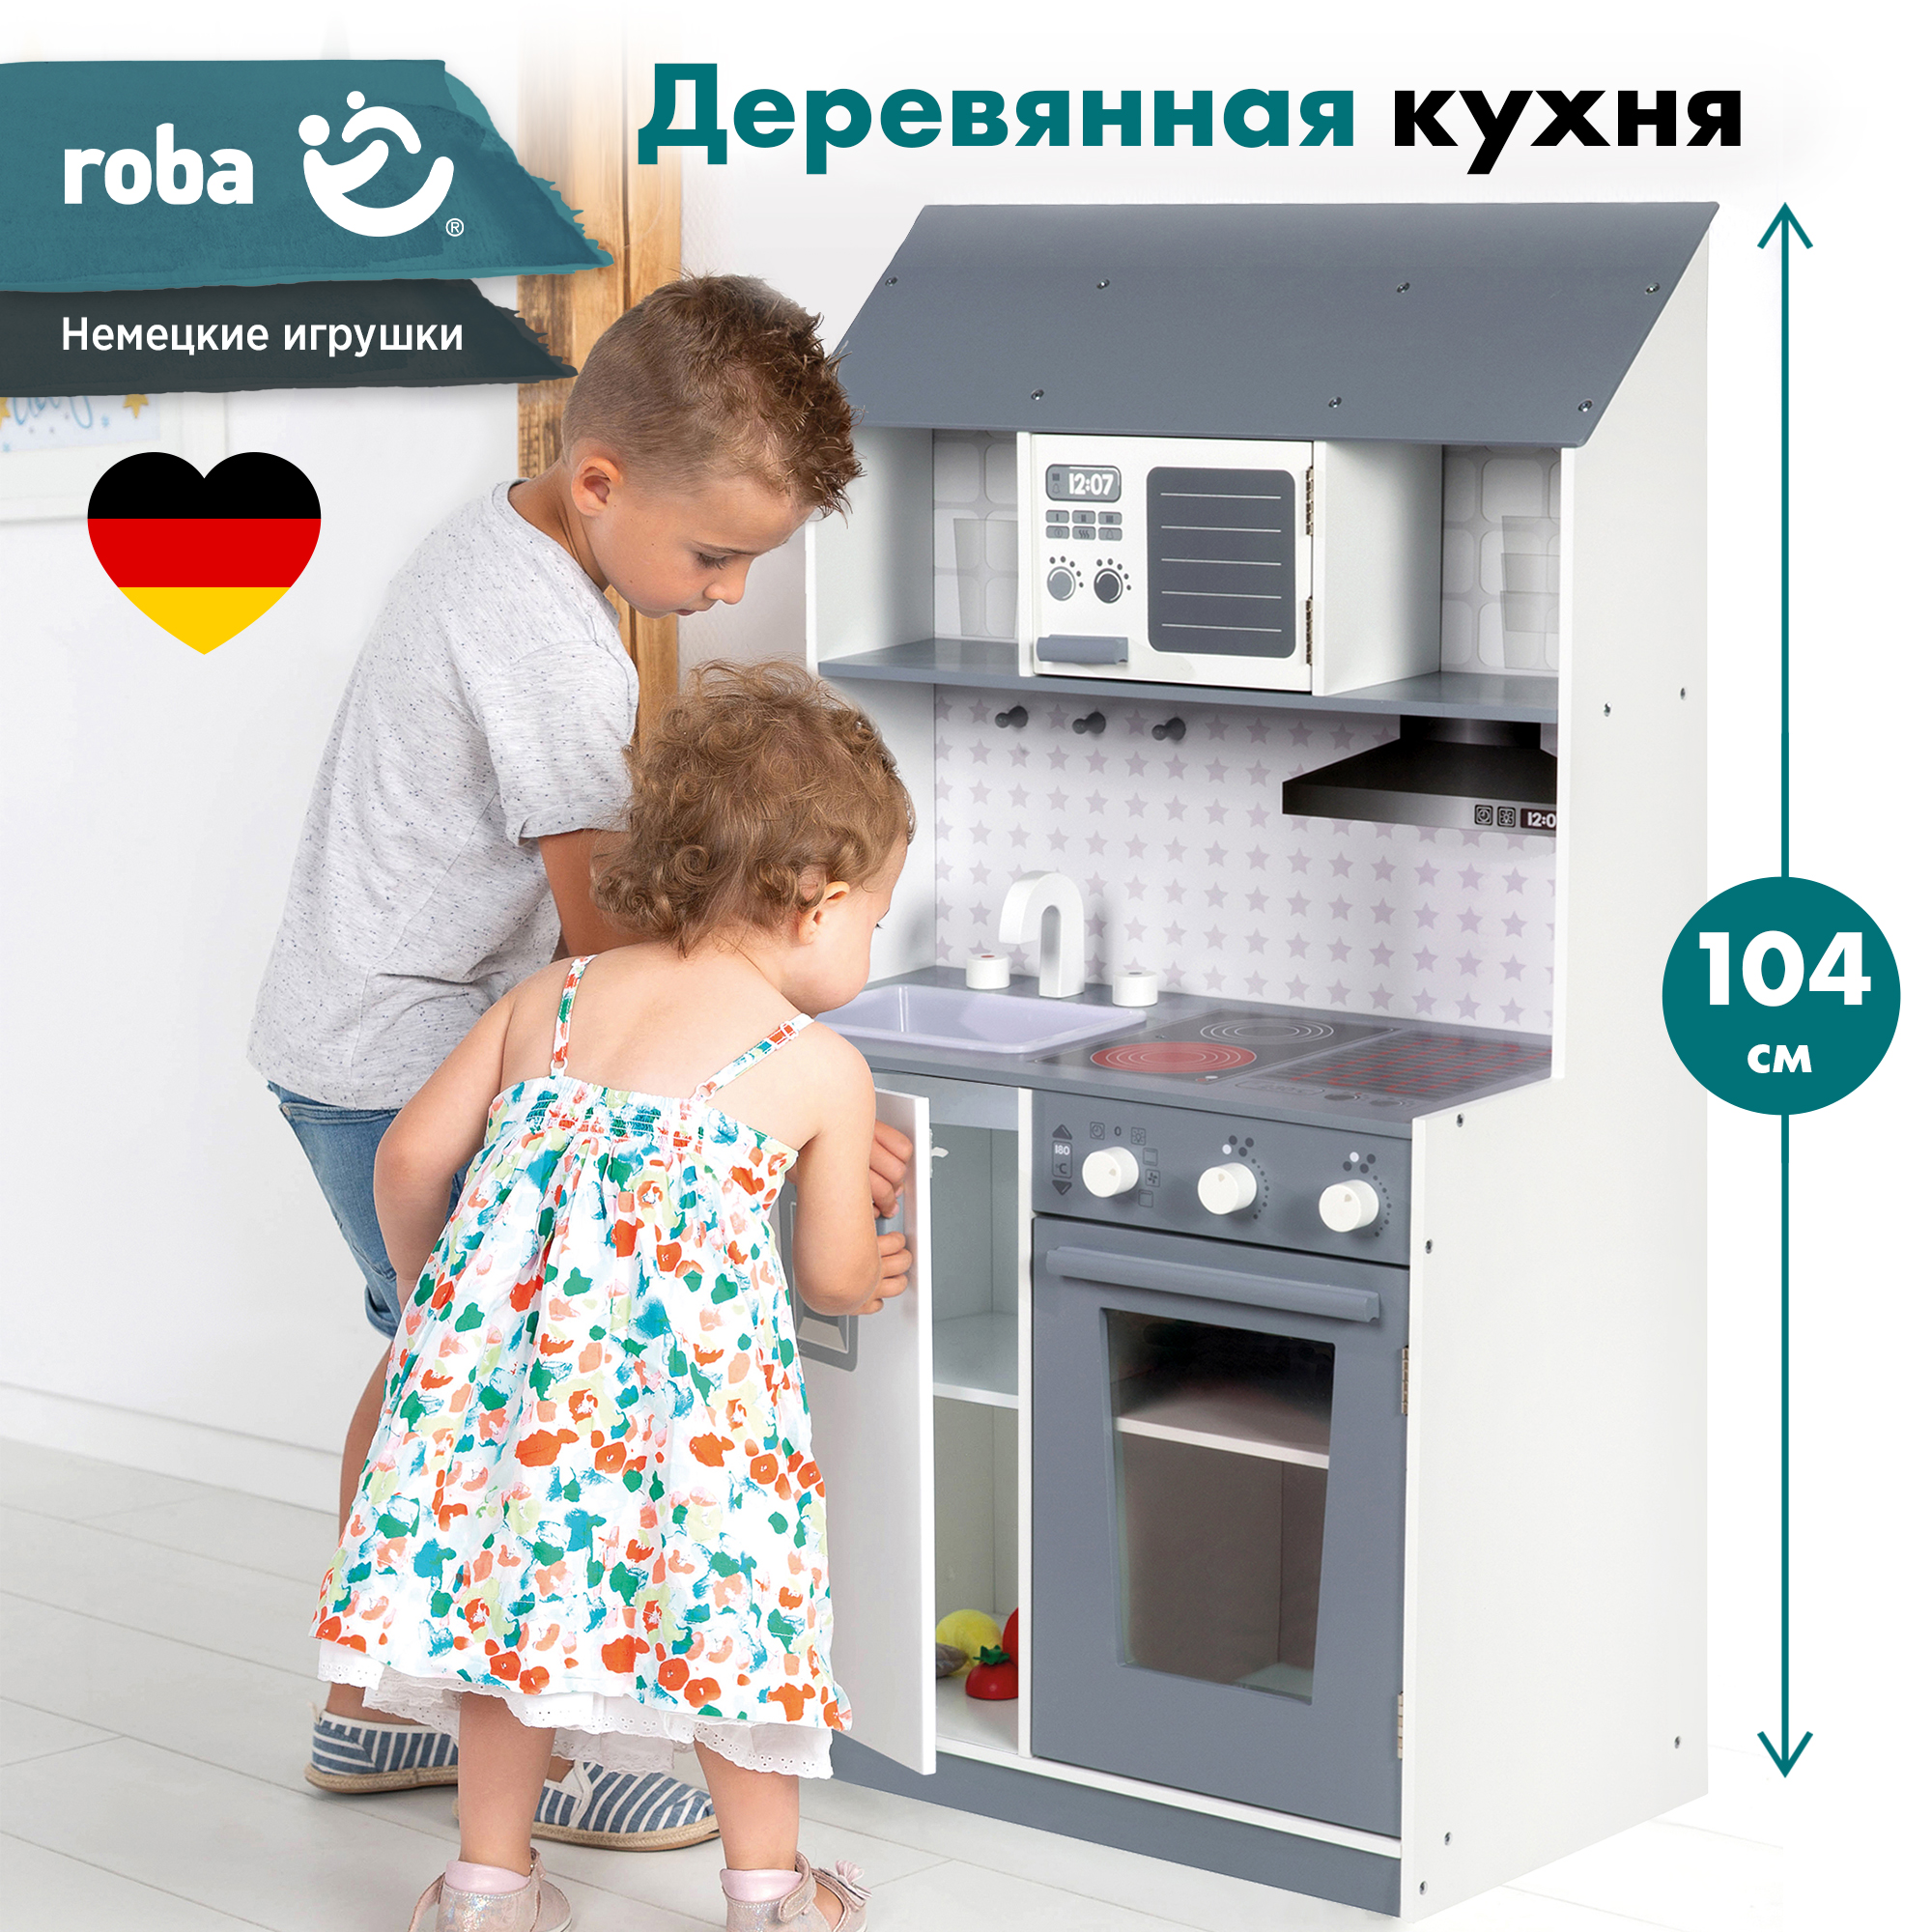 Кухня детская игровая Roba кухонный гарнитур: раковина, кран, СВЧ печь, плита, холодильник